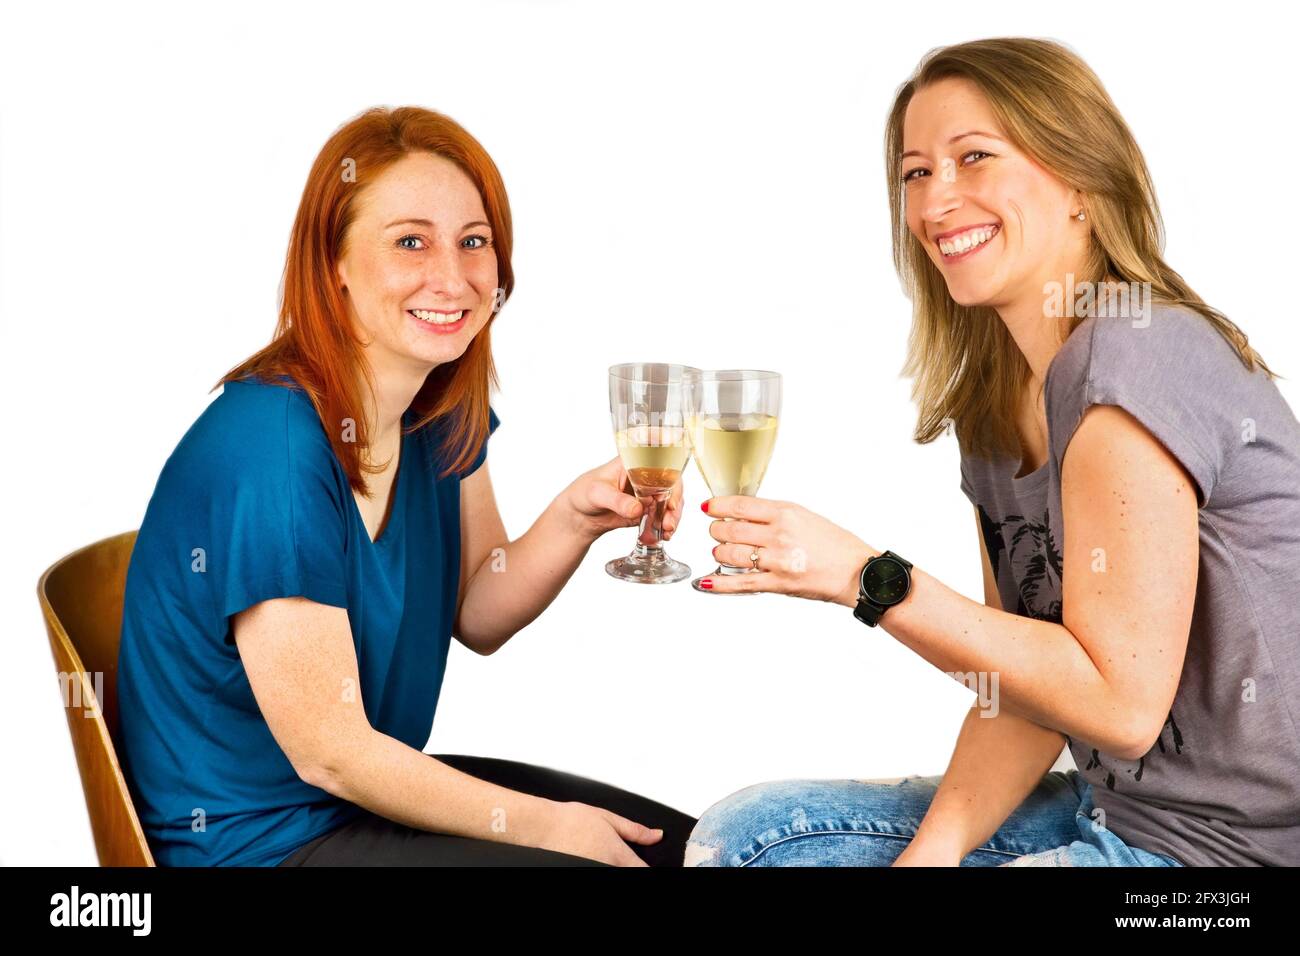 Zwei junge attraktive lachende Frau, die mit Weingläsern klirren (Cheers!). Isoliert auf weißem Hintergrund. Stockfoto